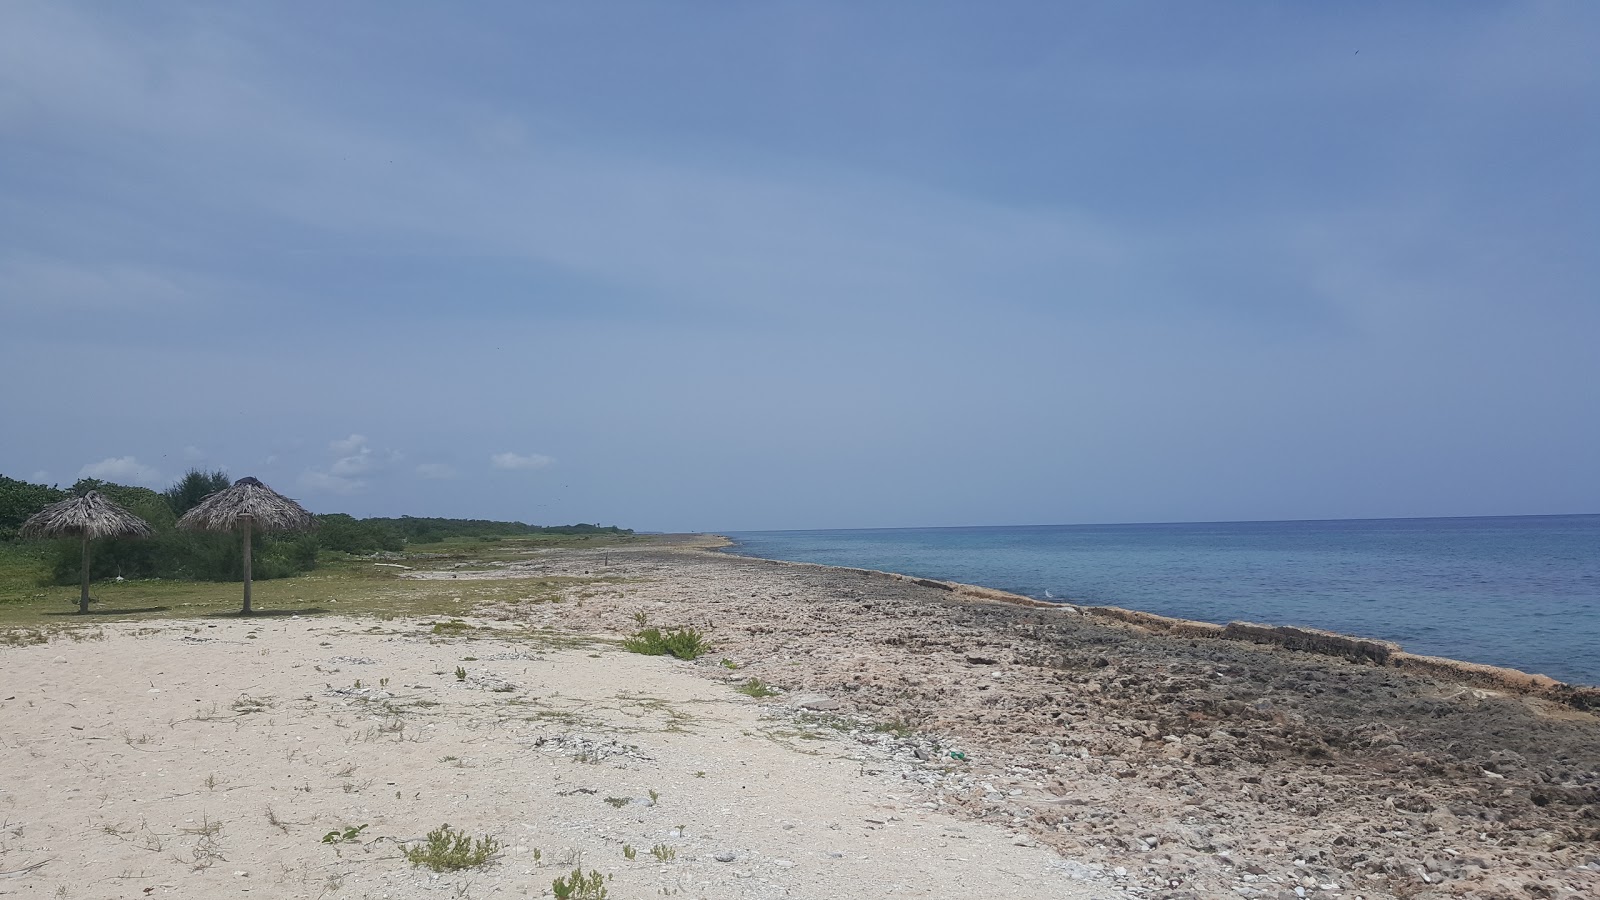 Zdjęcie Coral beach z powierzchnią turkusowa czysta woda